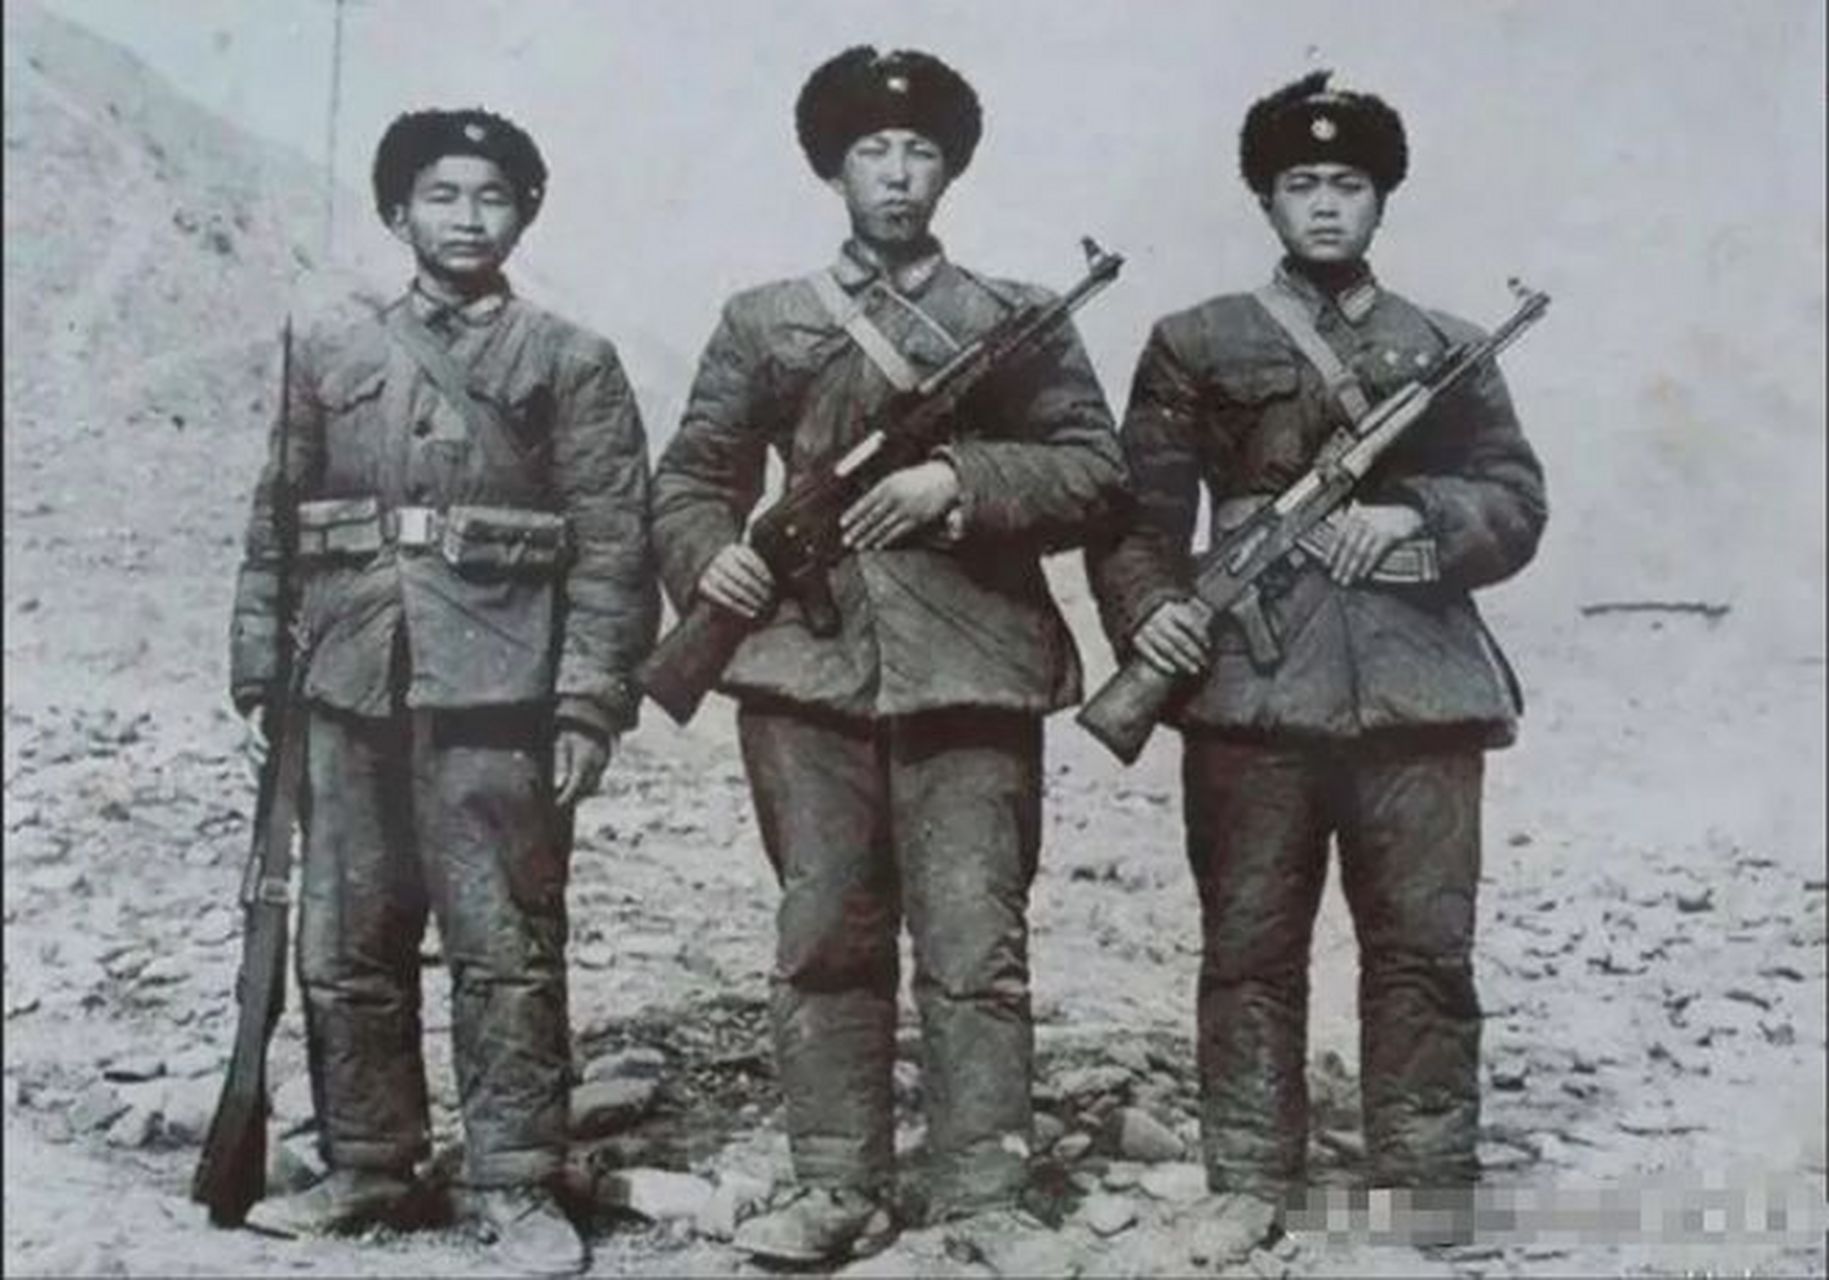 这张照片是对1962年对印自卫反击战中荣获一等功的三名战斗英雄的记录